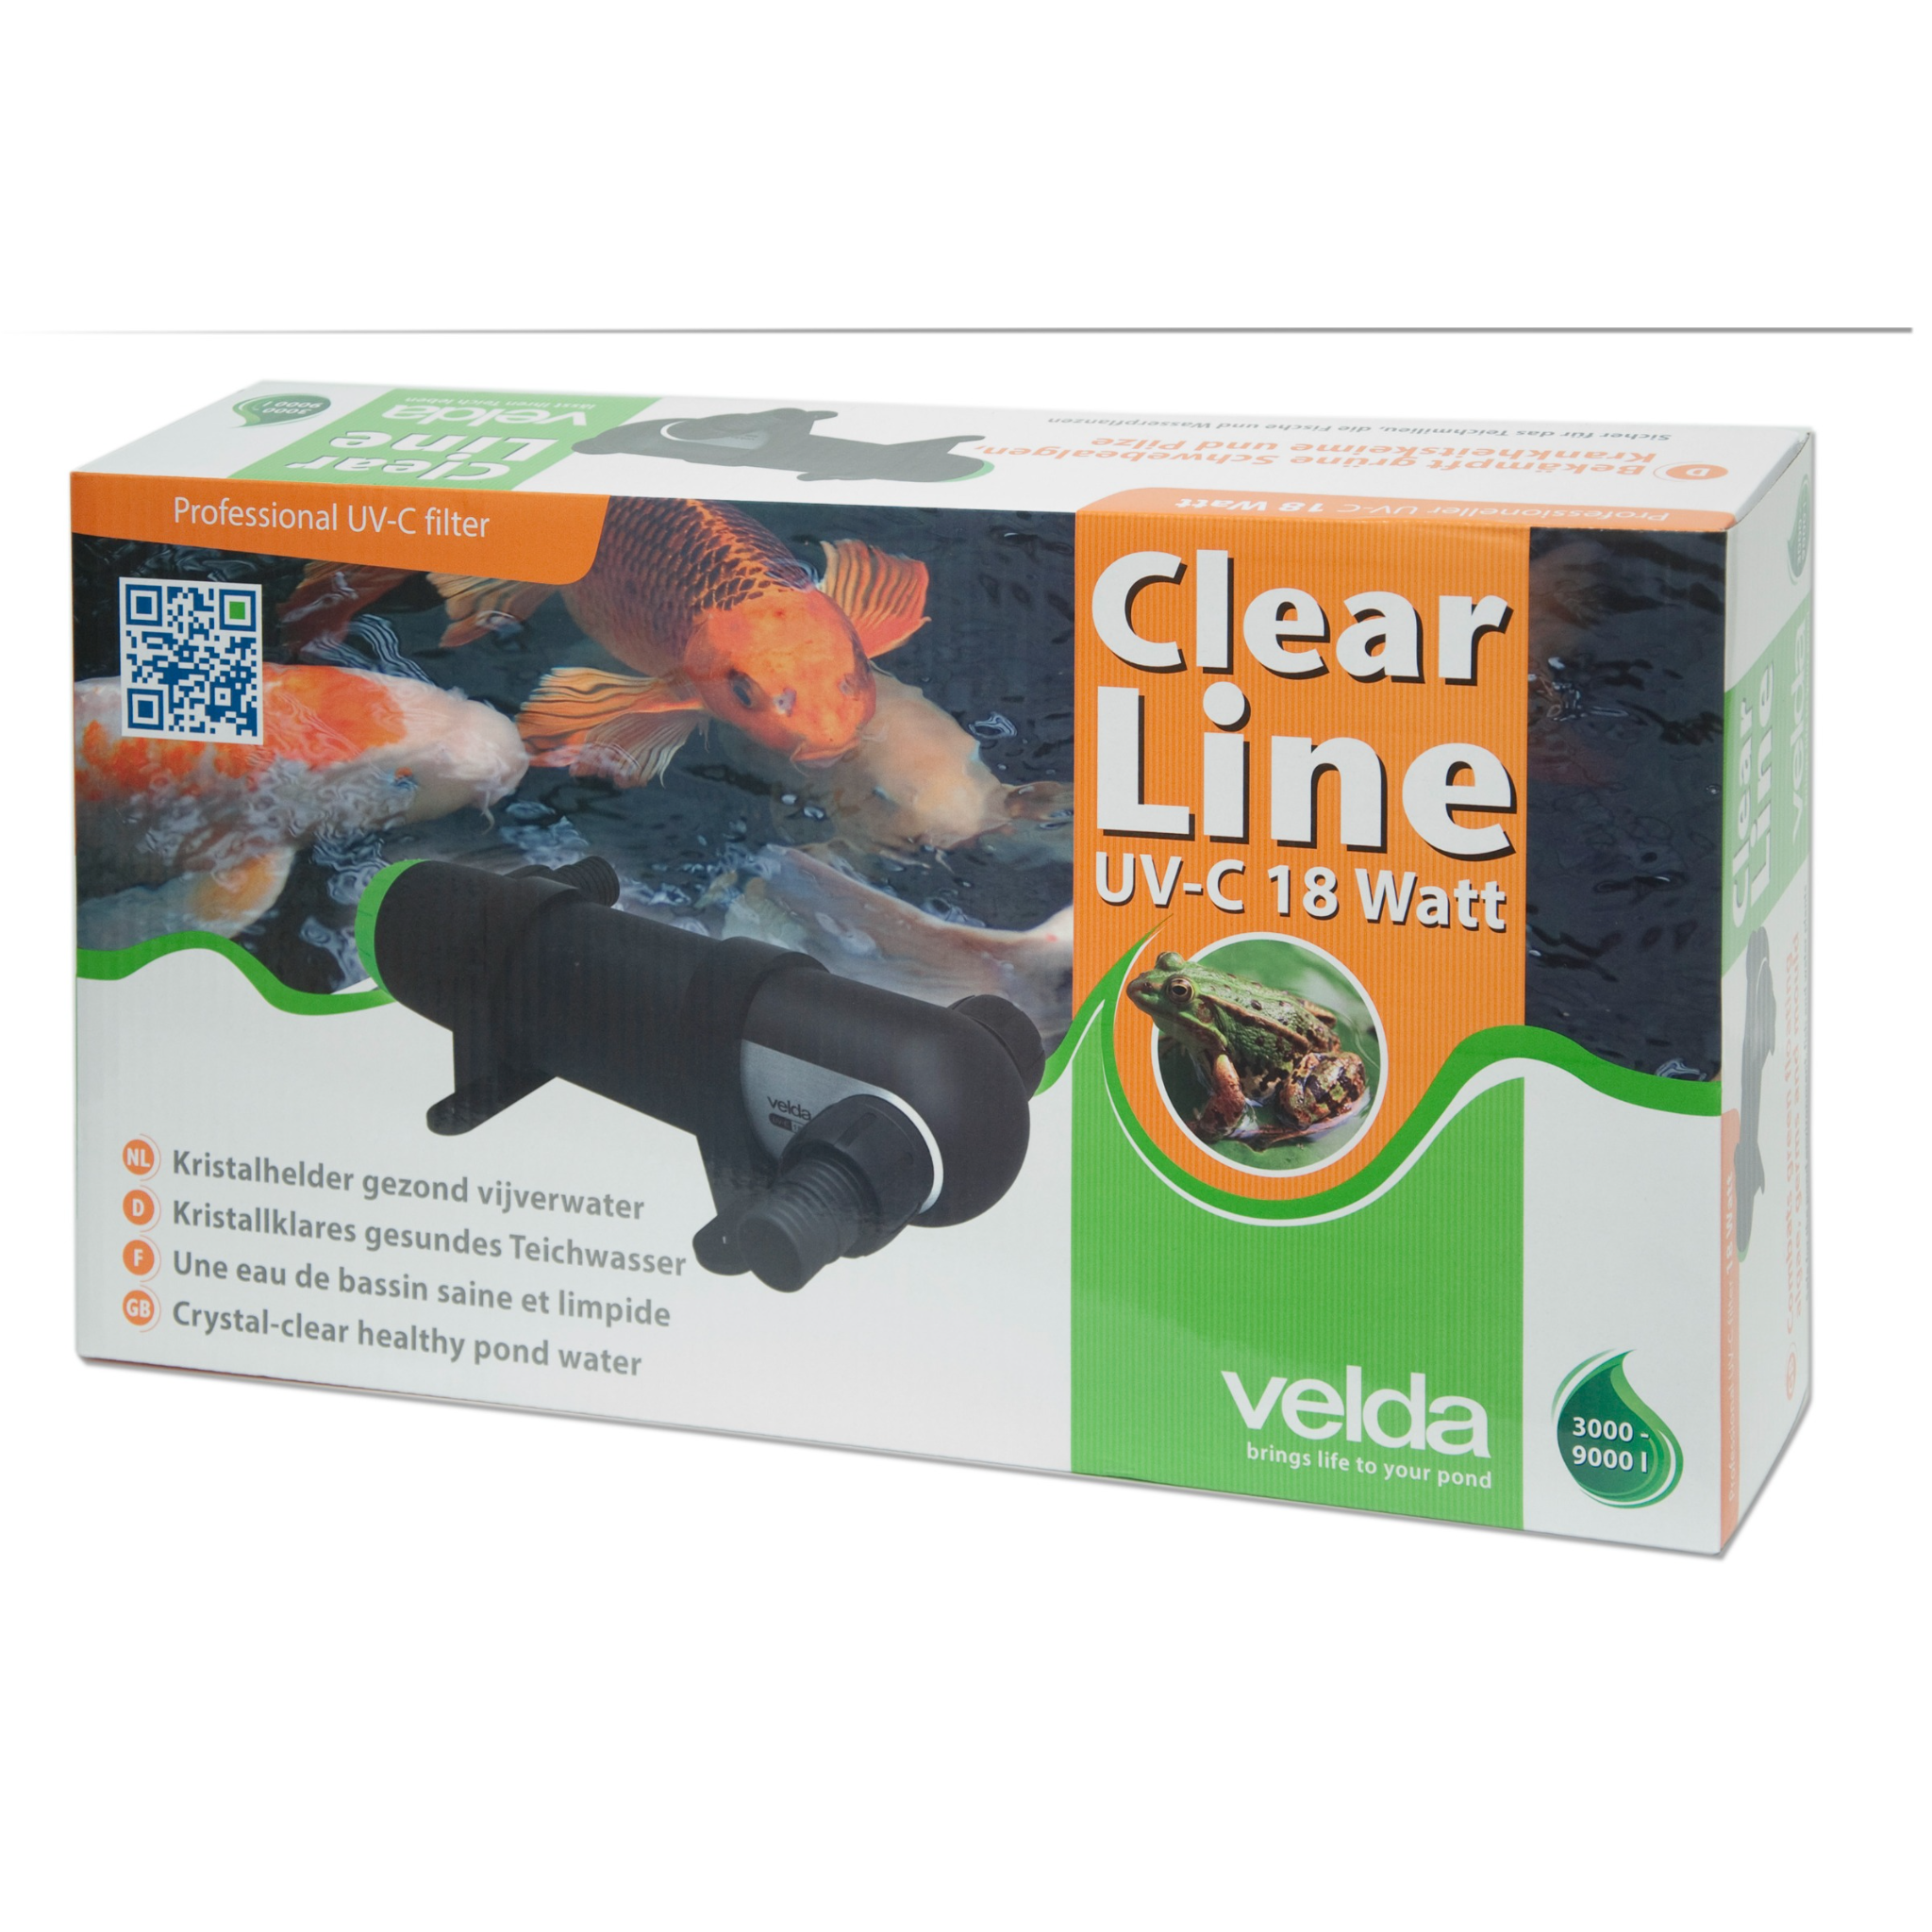 Clear Line UV-C 18 watt verpackung